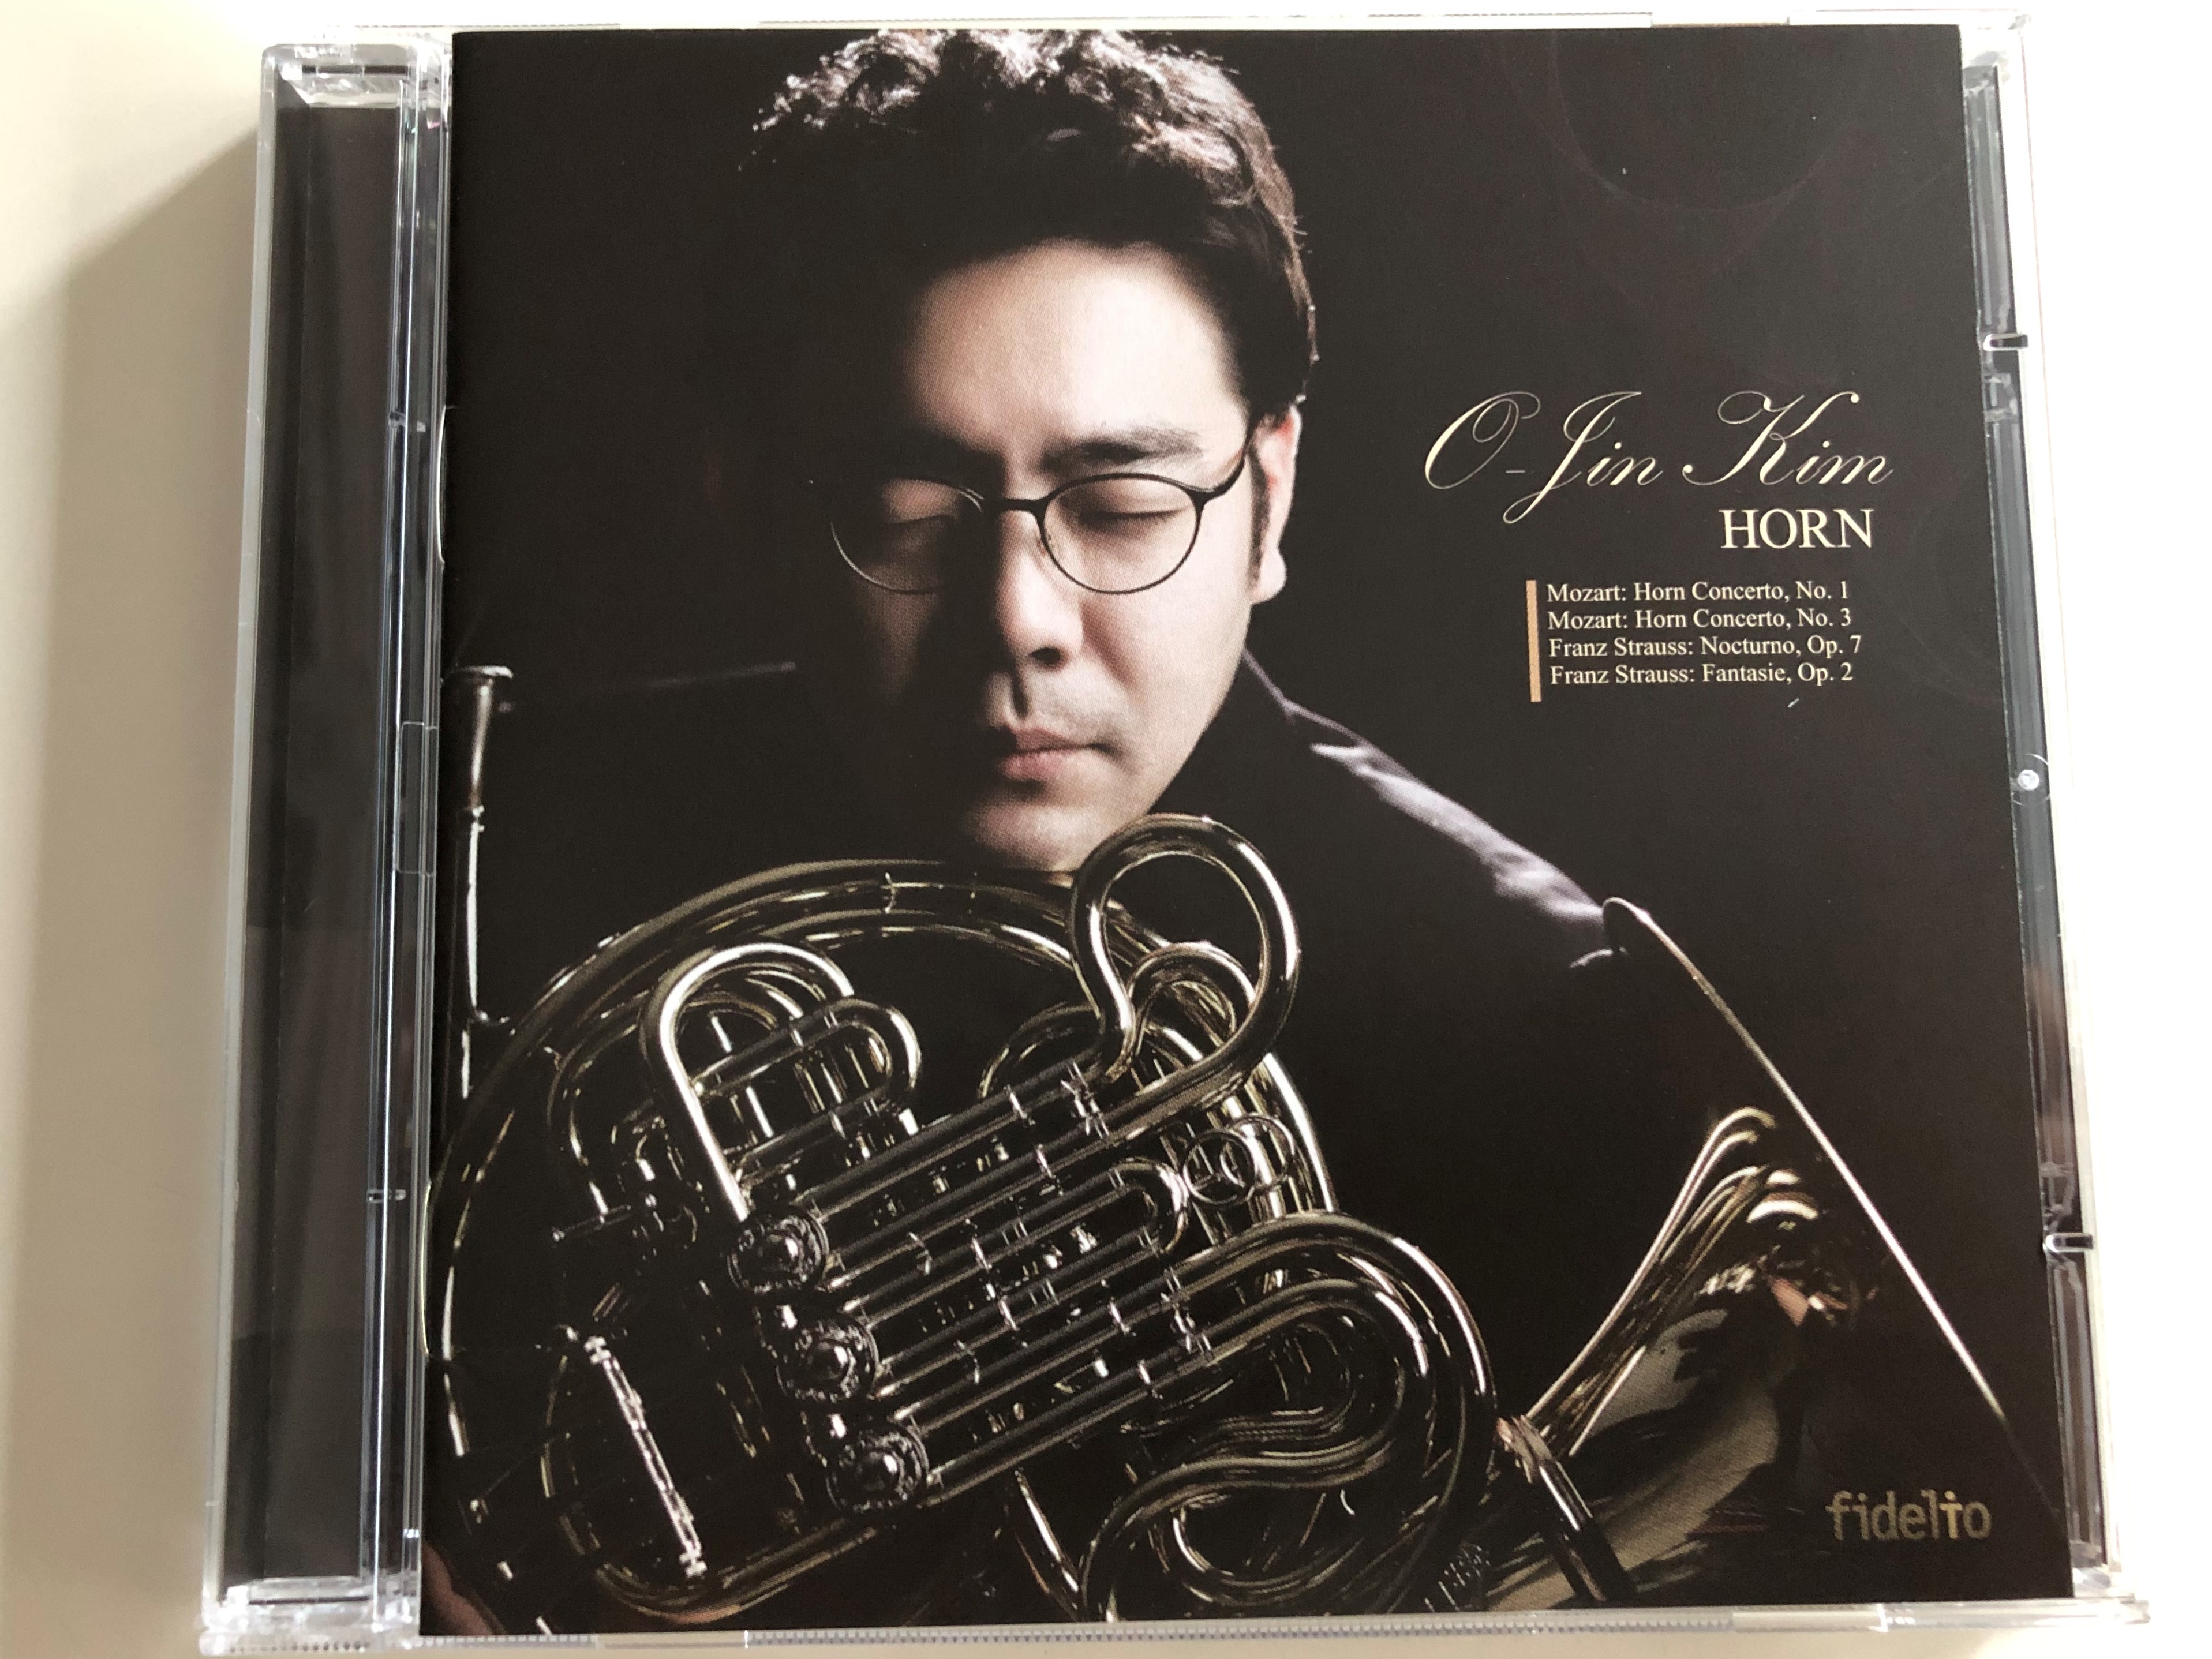 o-jin-kim-horn-mozart-horn-concerto-no.1-no.-3-franz-strauss-nocturno-op.-7-fantasie-op.-2-audio-cd-2014-fidelio-fid-cd-108-1-.jpg